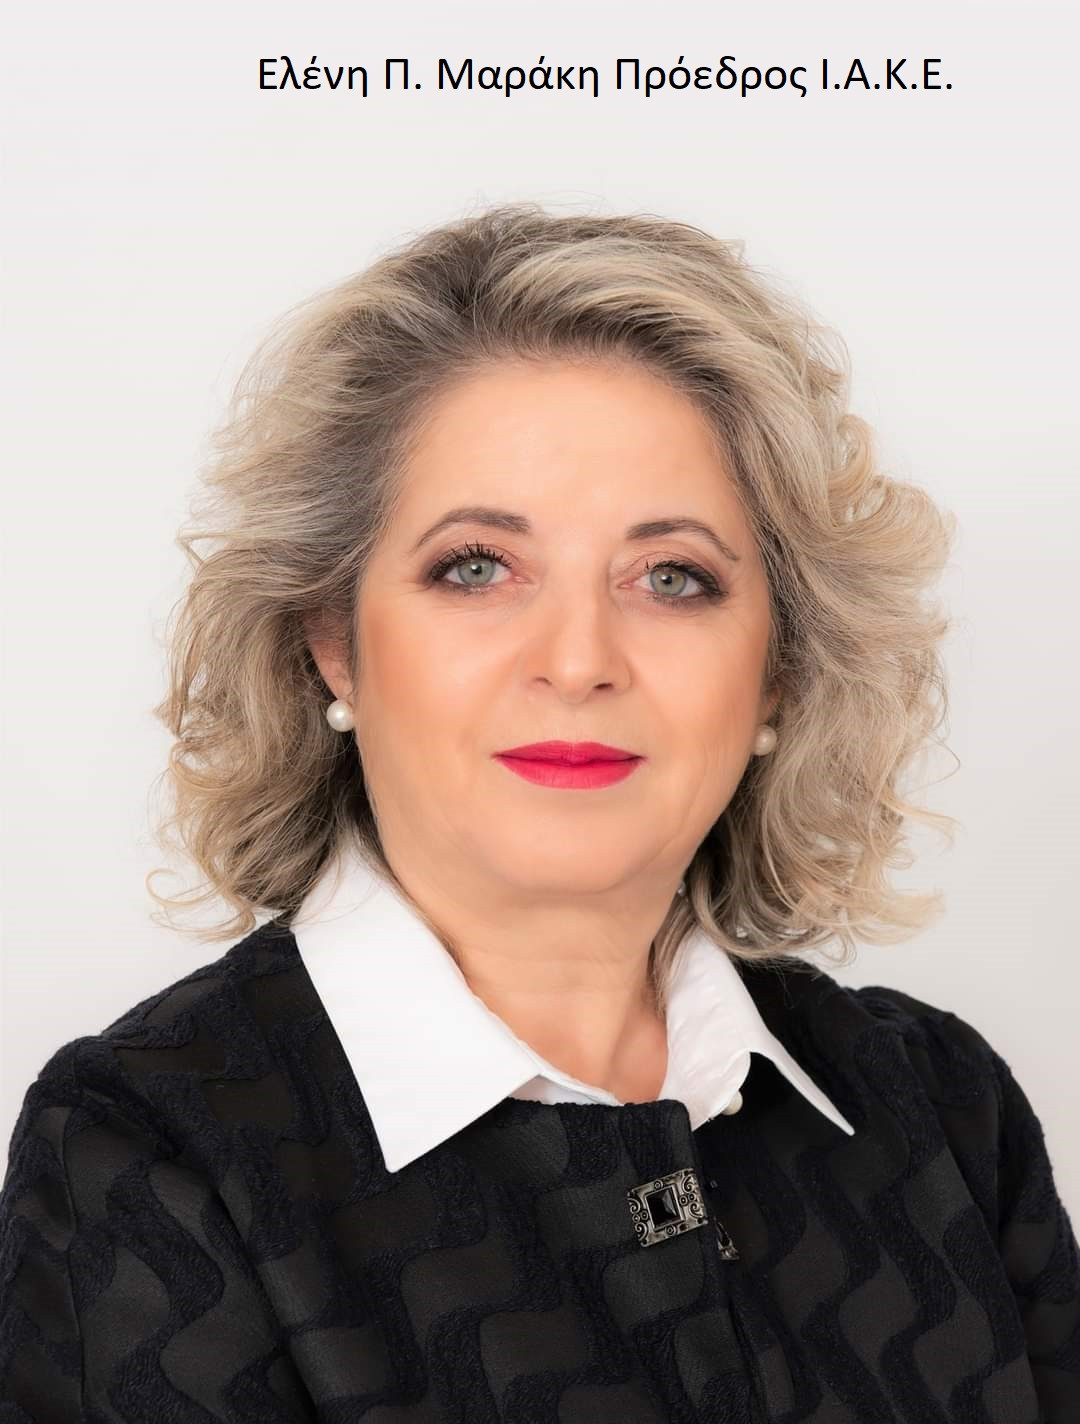 Η πρόεδρος του ΙΑΚΕ, κ. Ελένη Μαράκη